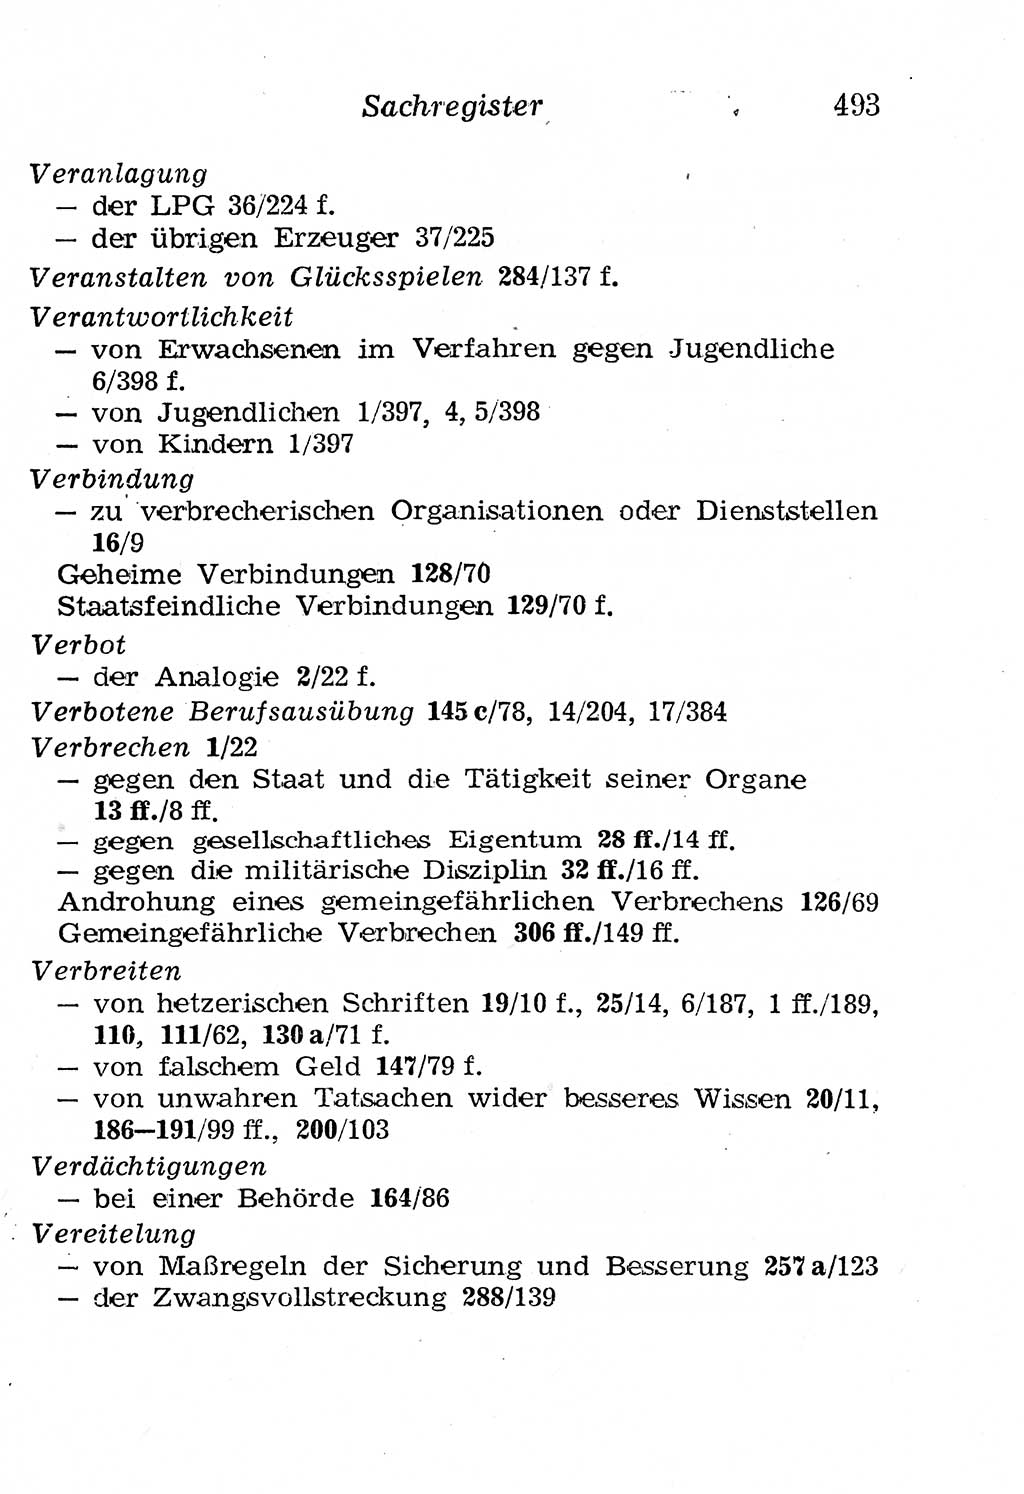 Strafgesetzbuch (StGB) und andere Strafgesetze [Deutsche Demokratische Republik (DDR)] 1958, Seite 493 (StGB Strafges. DDR 1958, S. 493)